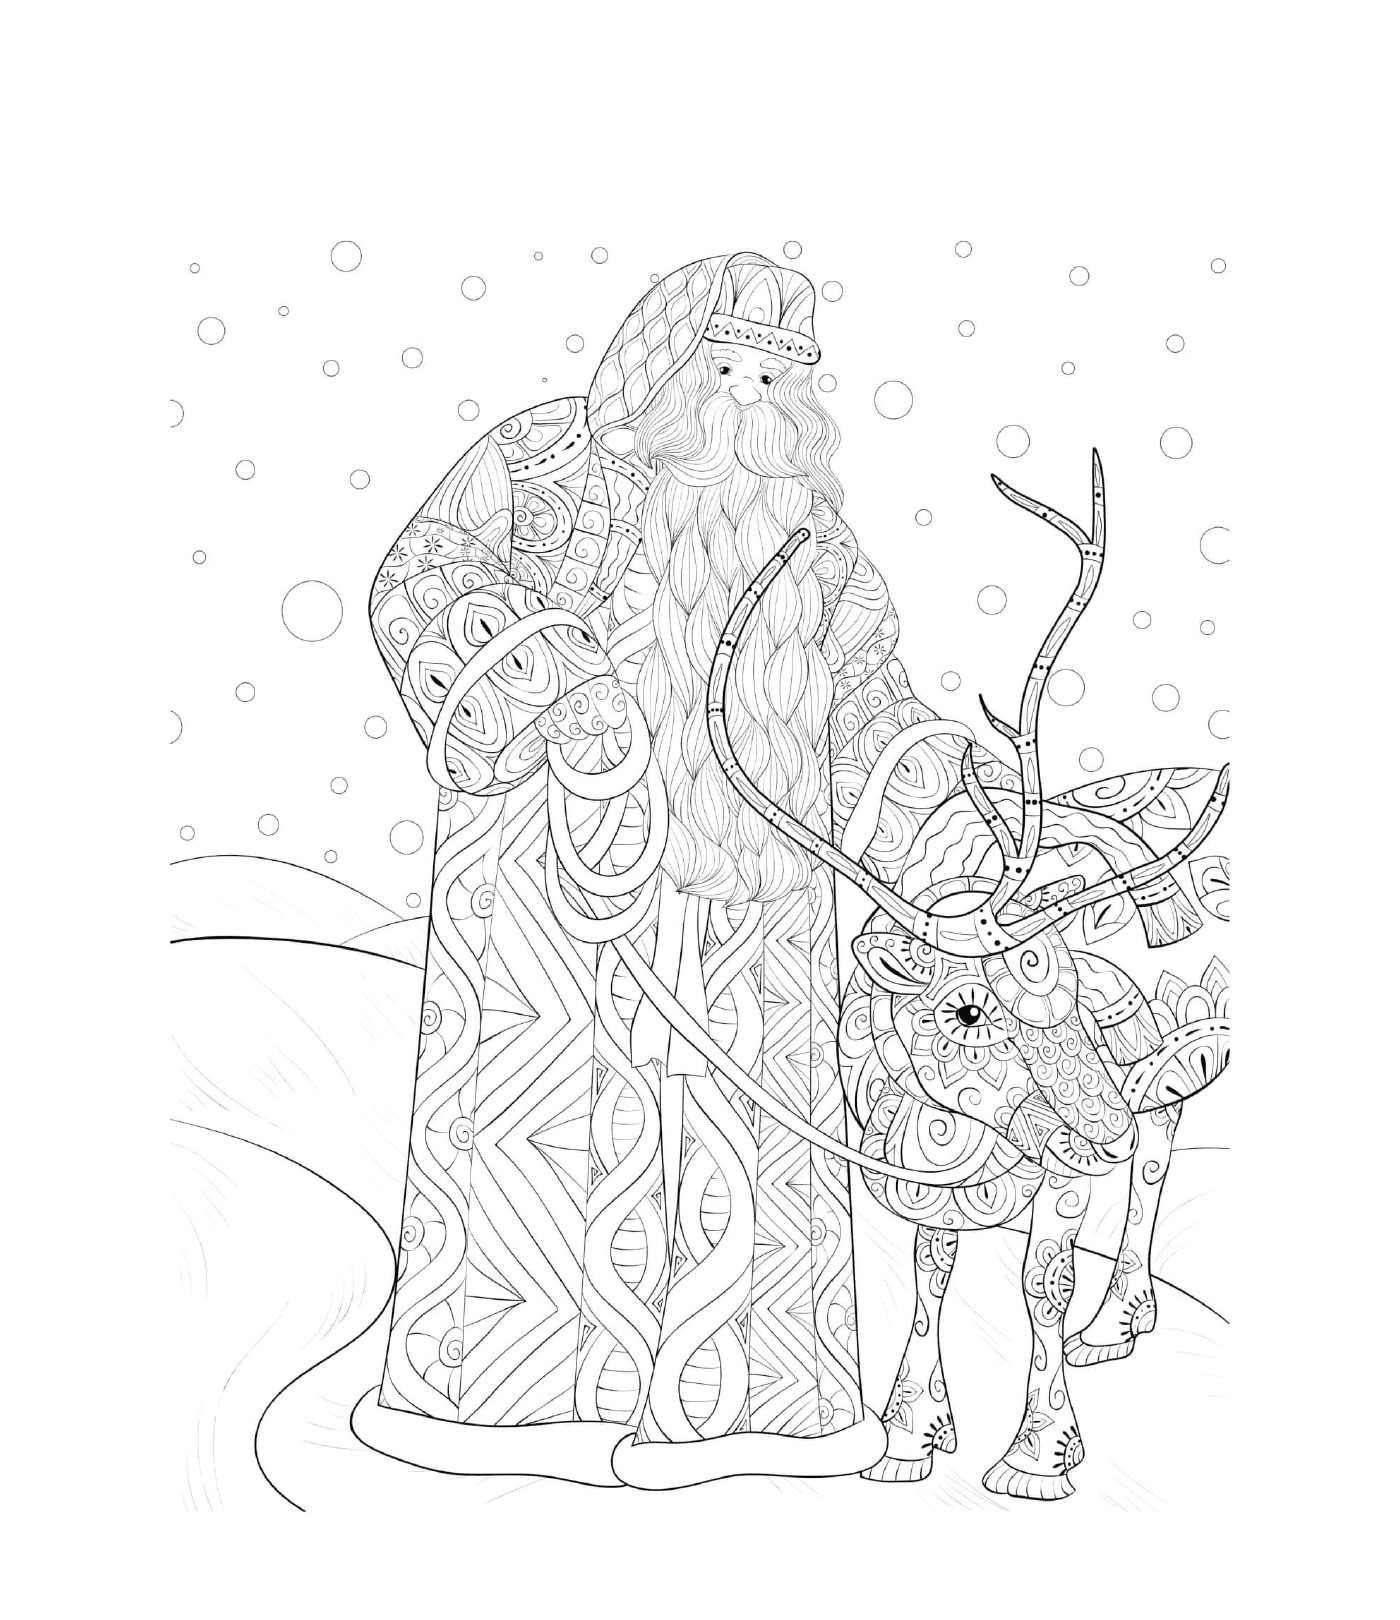  Санта и олень в снежном ландшафте 